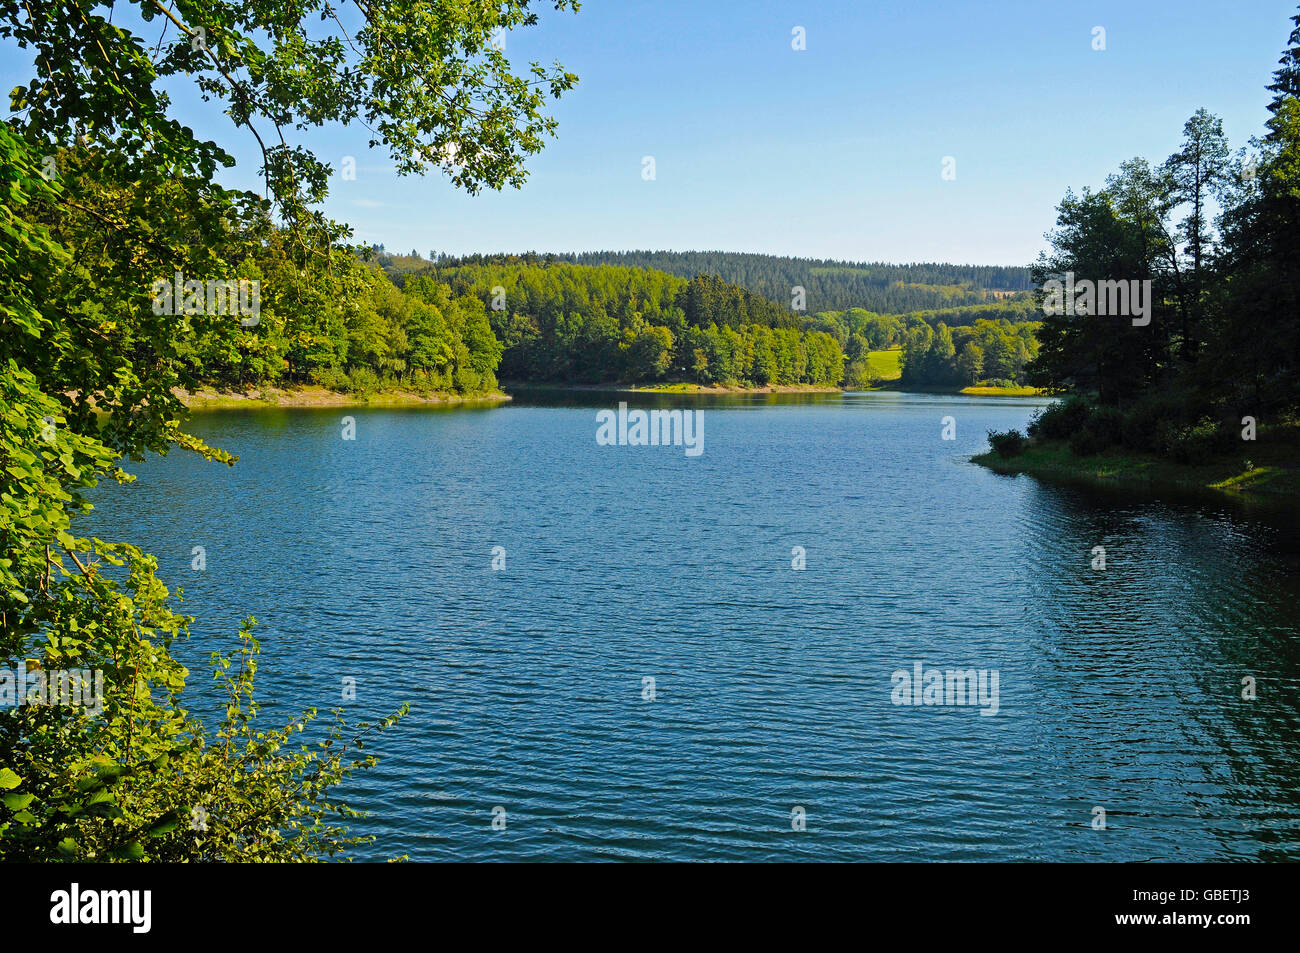 Serbatoio Furwigge, lago di ritegno, Meinerzhagen, Ebbegebirge Nature Park Sauerland regione Renania settentrionale-Vestfalia, Germania / Fürwiggetalsperre Foto Stock